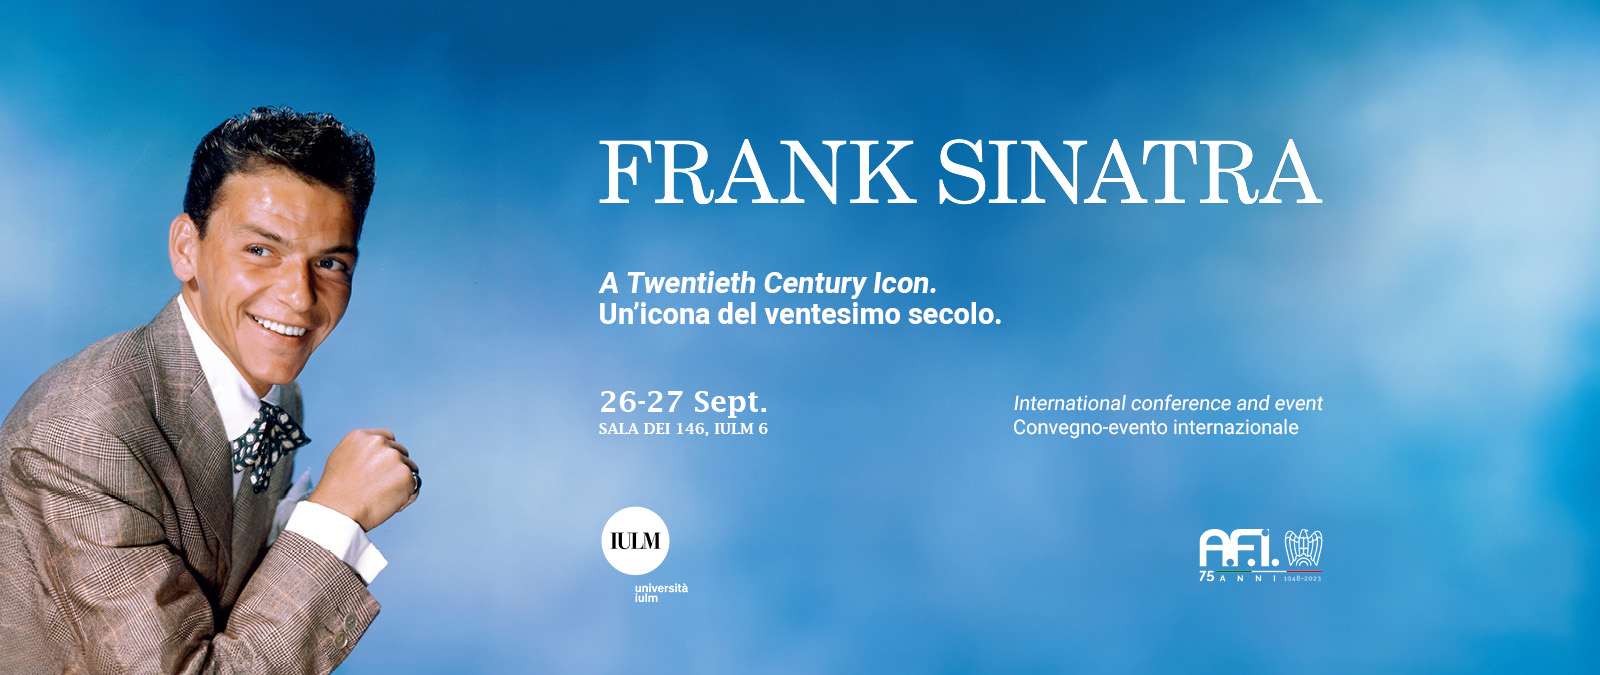 Frank Sinatra: A Twentieth Century Icon